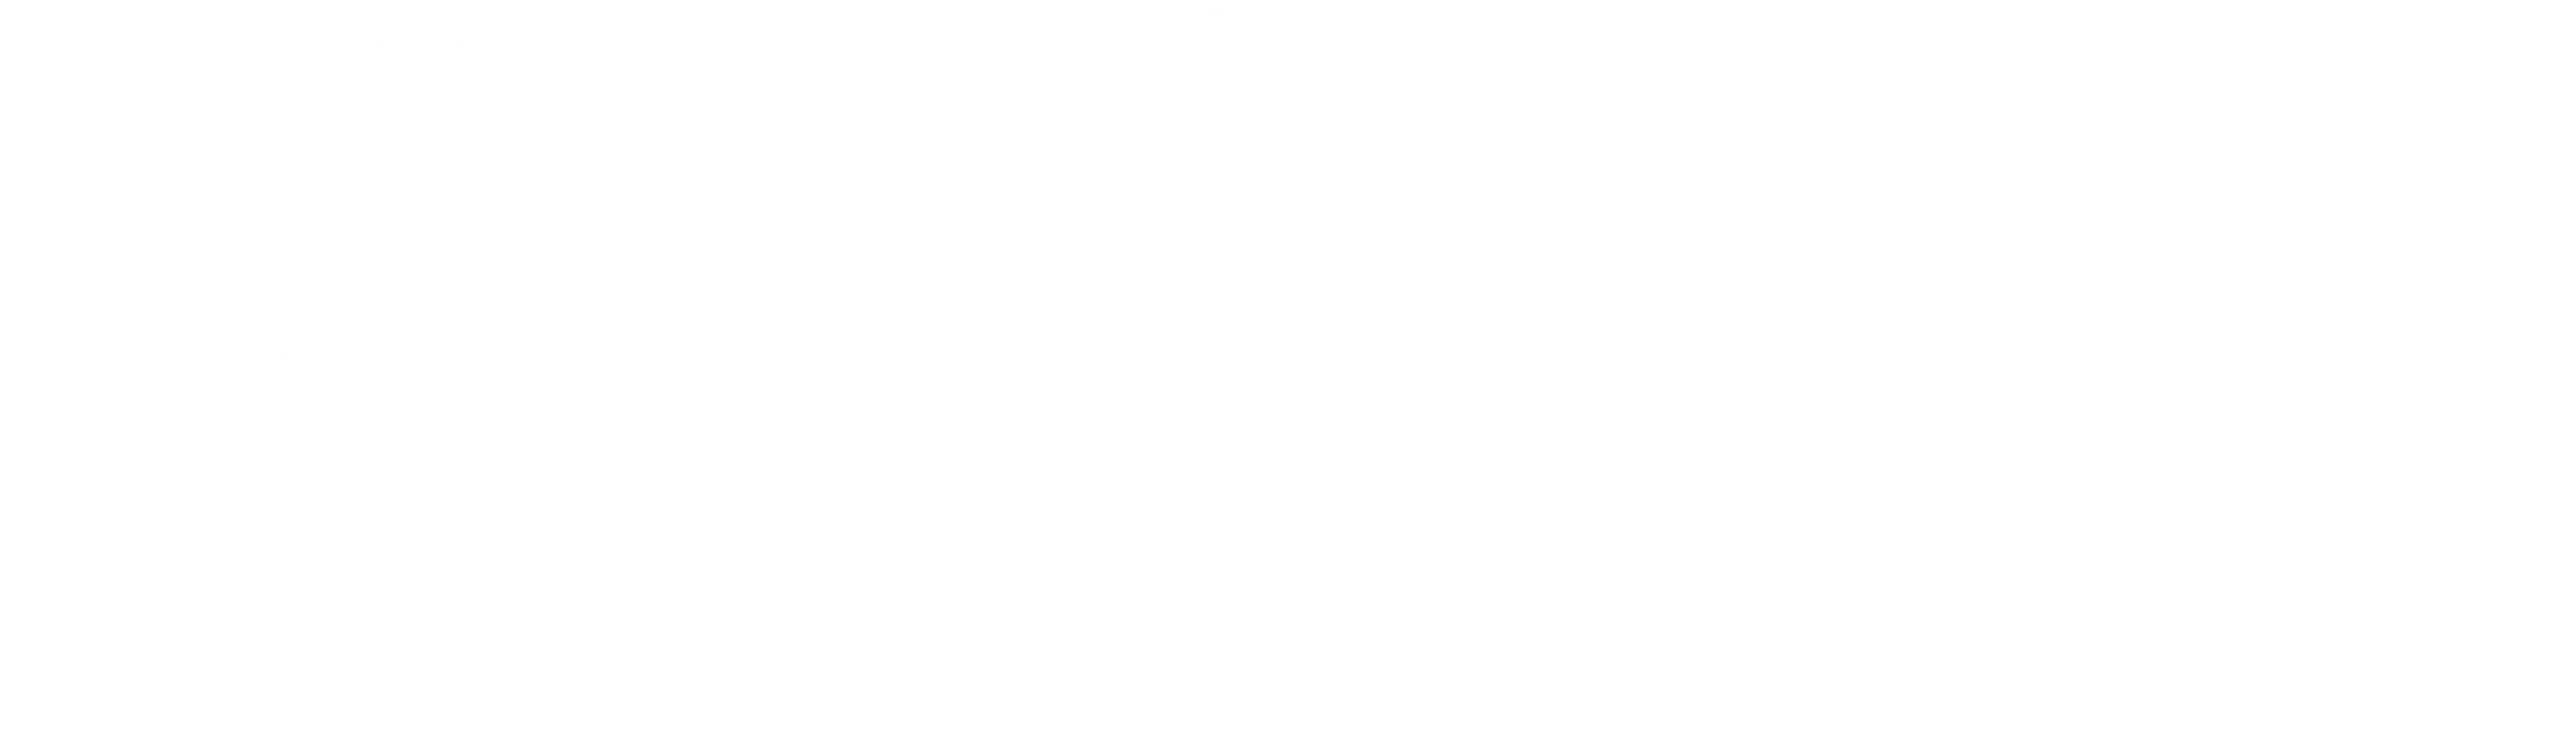 Logo de l’Université Monash blanc